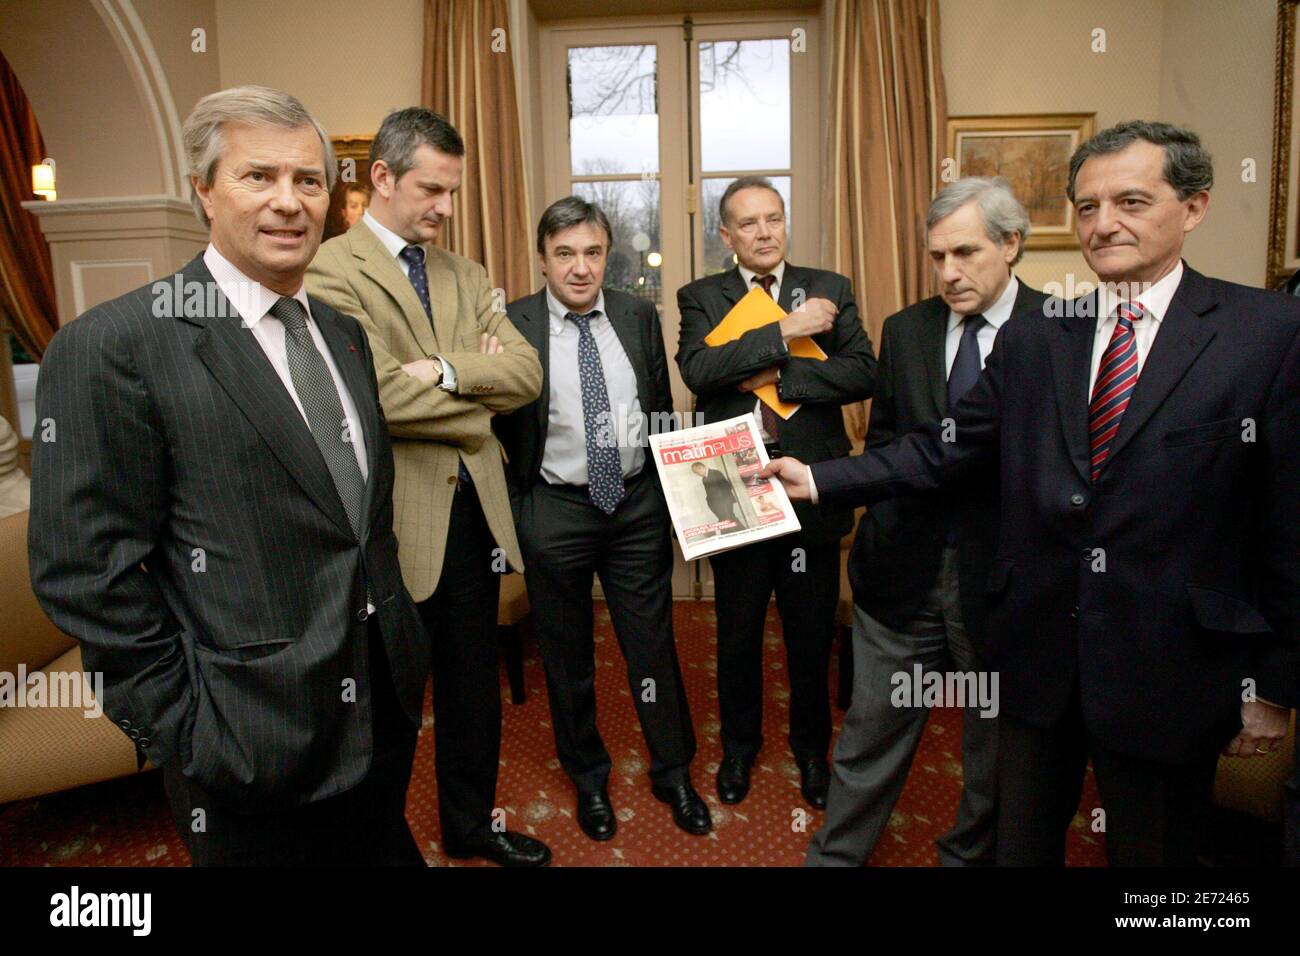 Vincent Bollore, Pierre Fanneau (le Progres), Alain Plombat (midi libre),  M. Jeantet (DG le monde), Jean-Marie Colombani, Olivier Faguer (Sud Ouest)  après une conférence de presse à Paris le 6 février, 2007